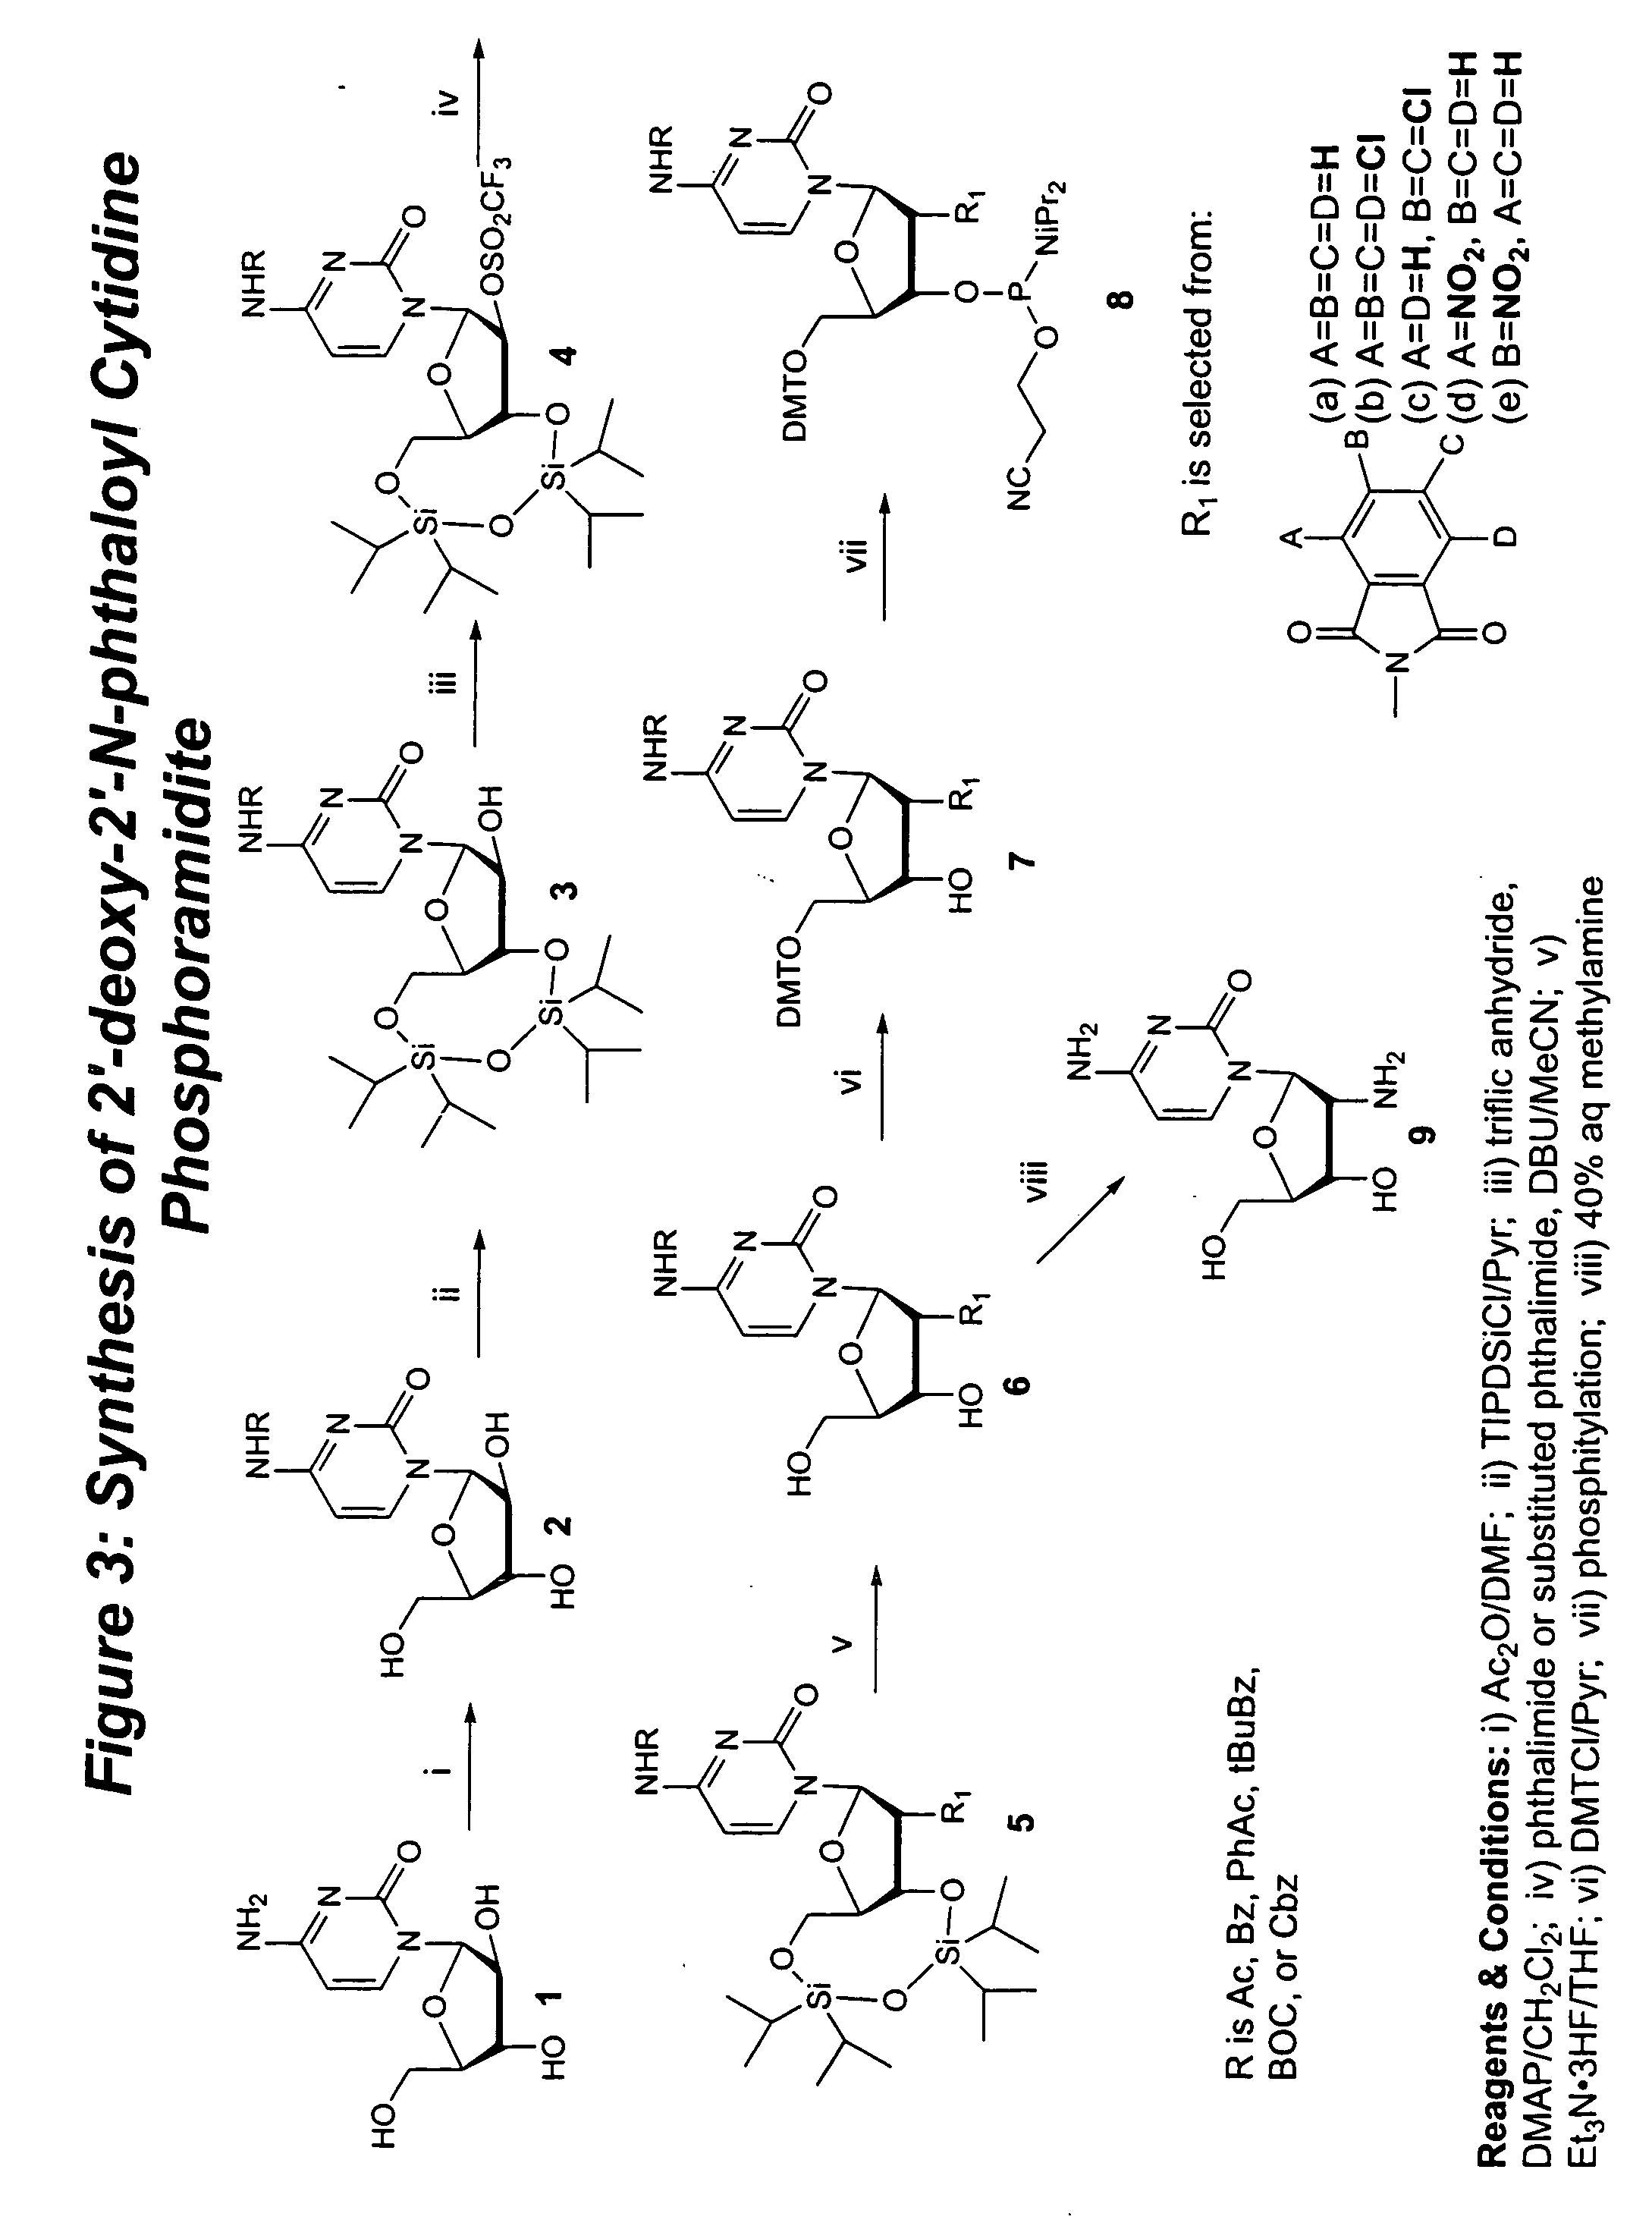 Methods for synthesizing nucleosides, nucleoside derivatives and non-nucleoside derivatives